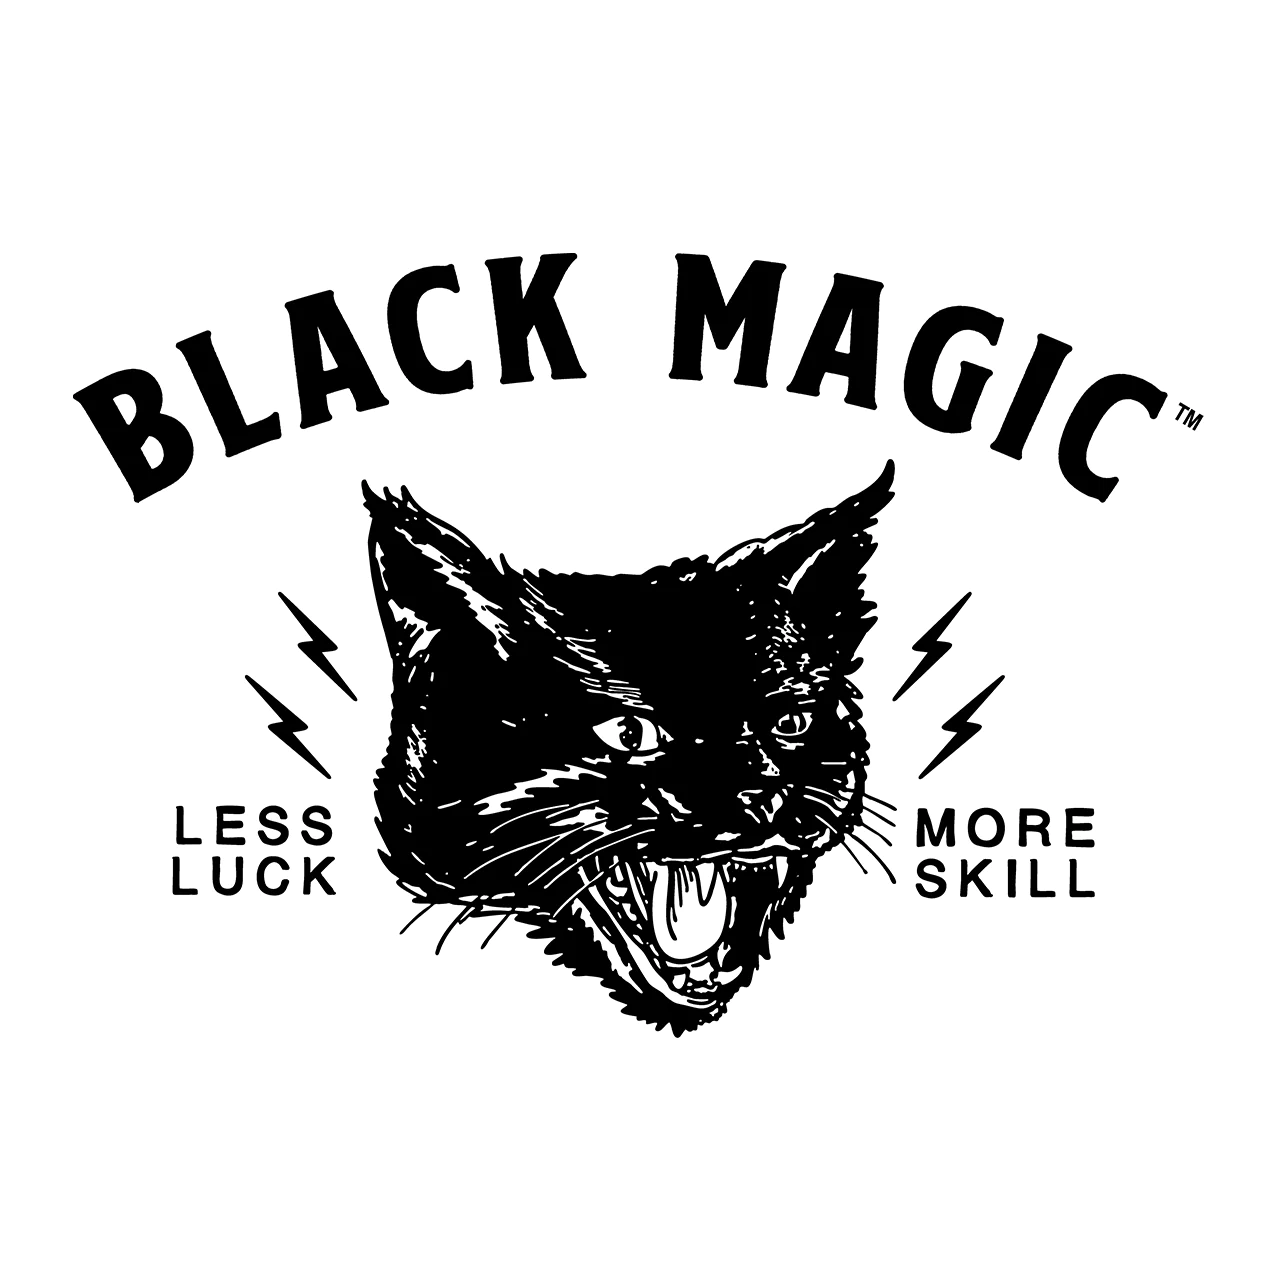 Black Magic Supply BZRK Pre-Workout